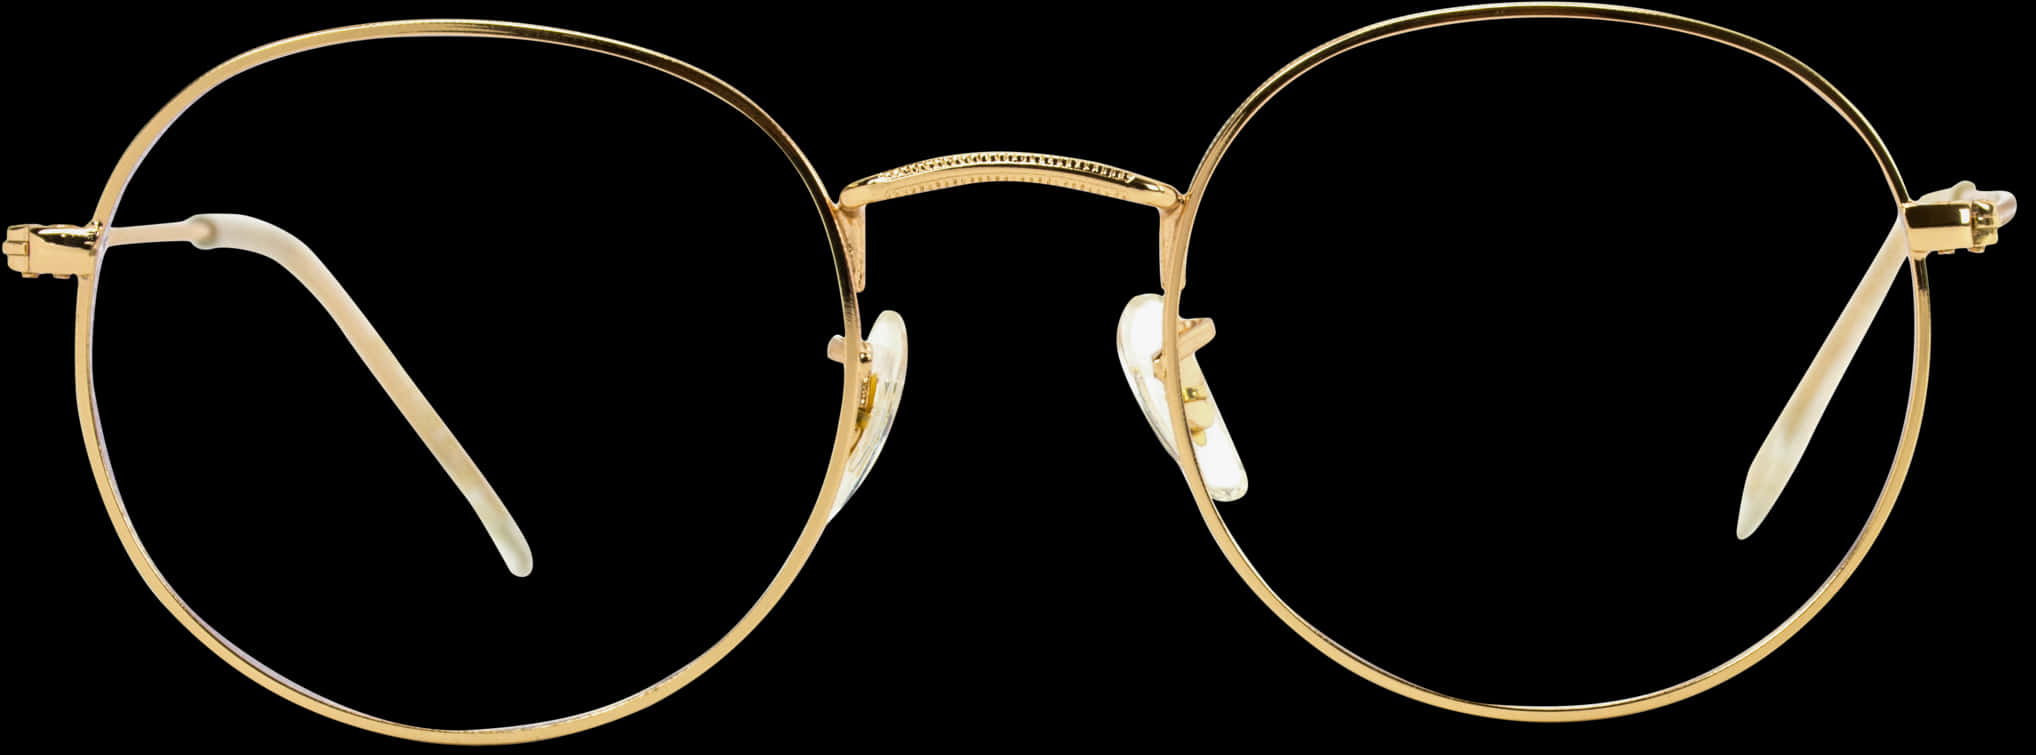 Elegant Gold Round Eyeglasses Isolated